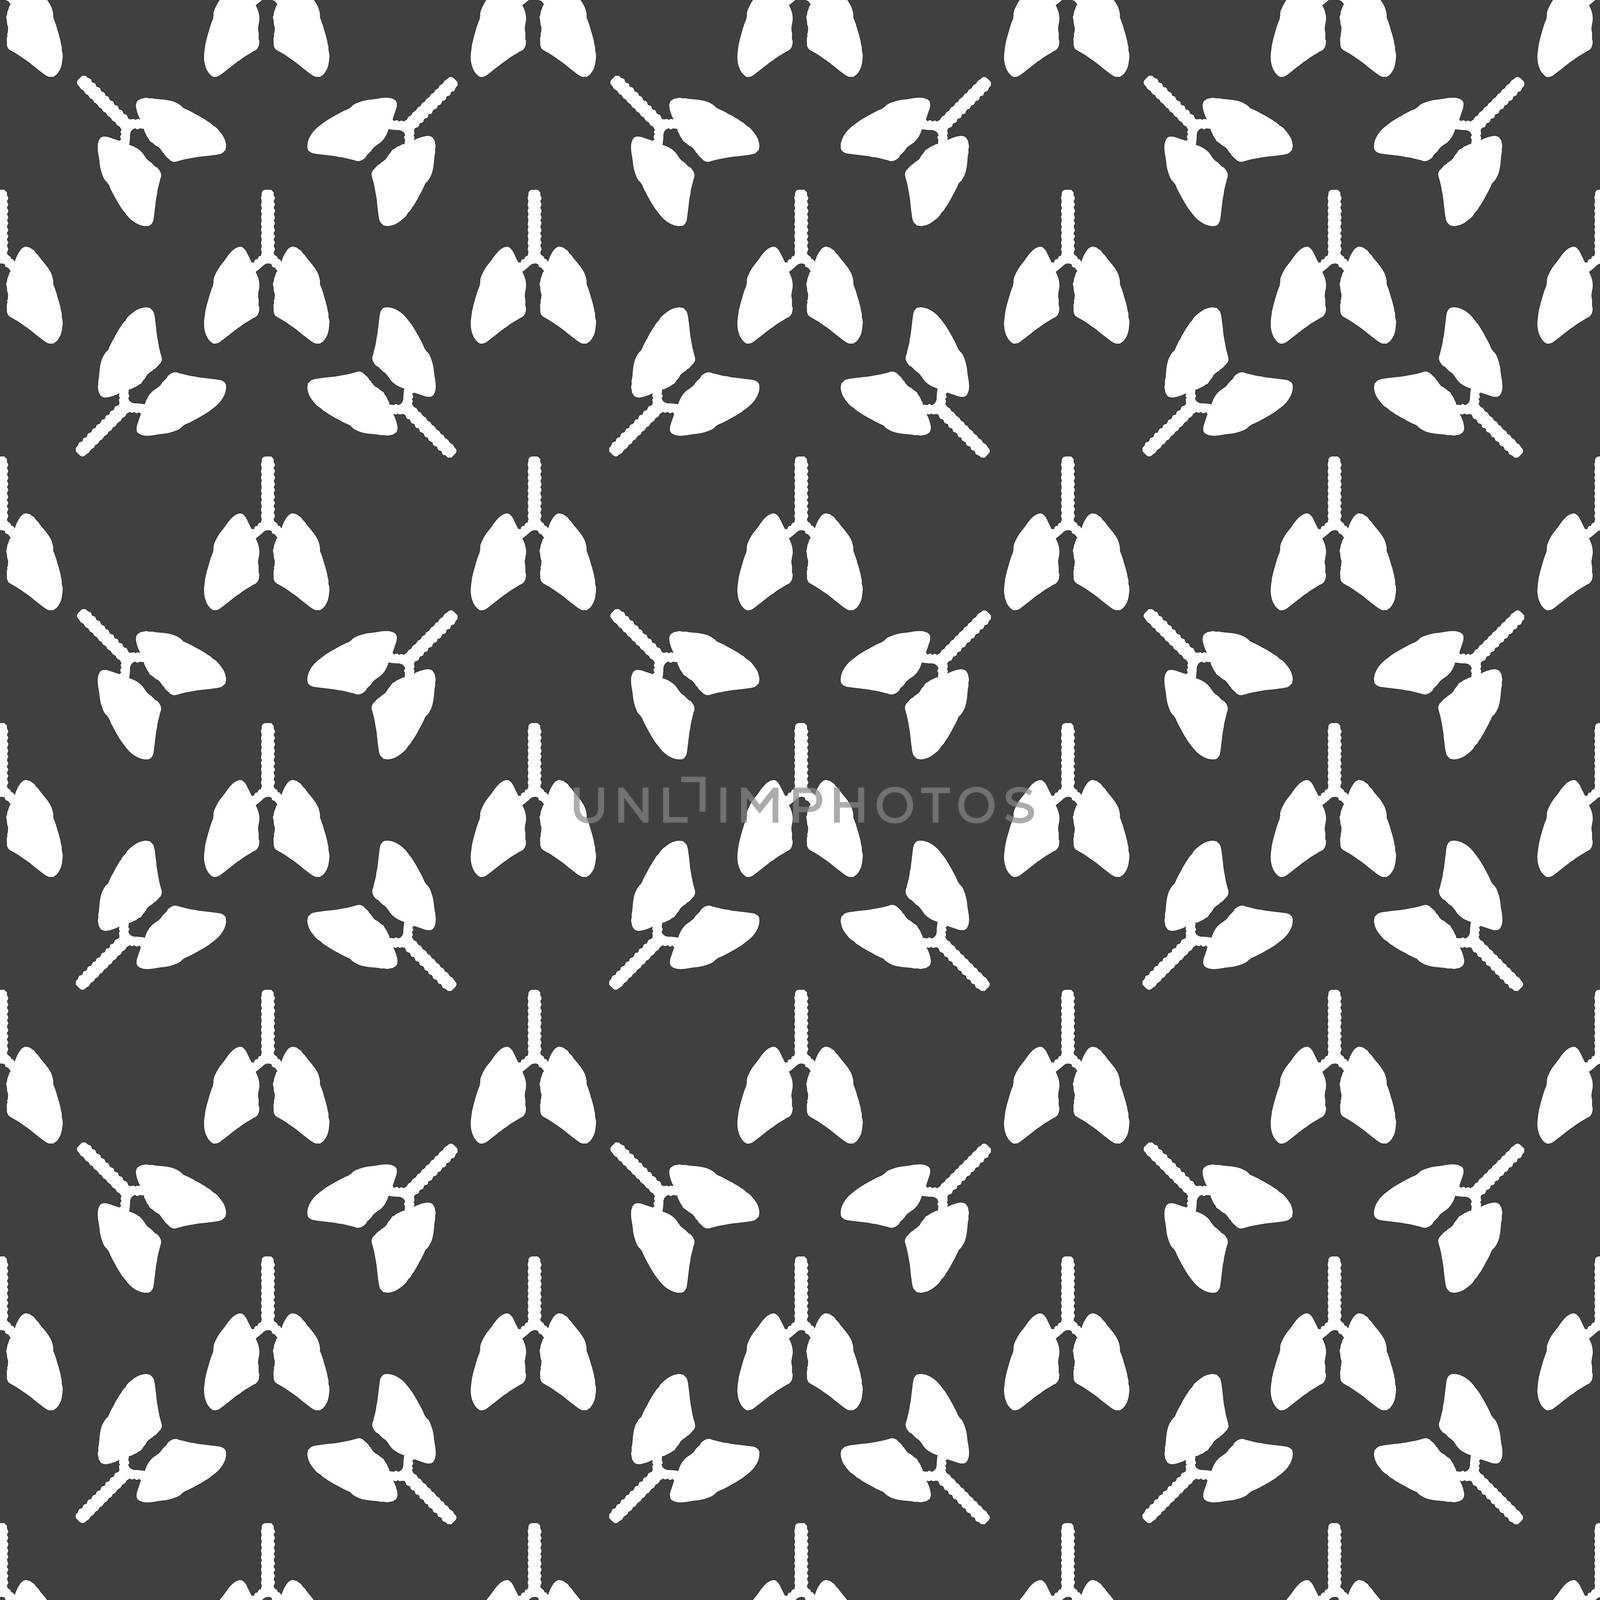 Human lung web icon. flat design. Seamless gray pattern. by serhii_lohvyniuk